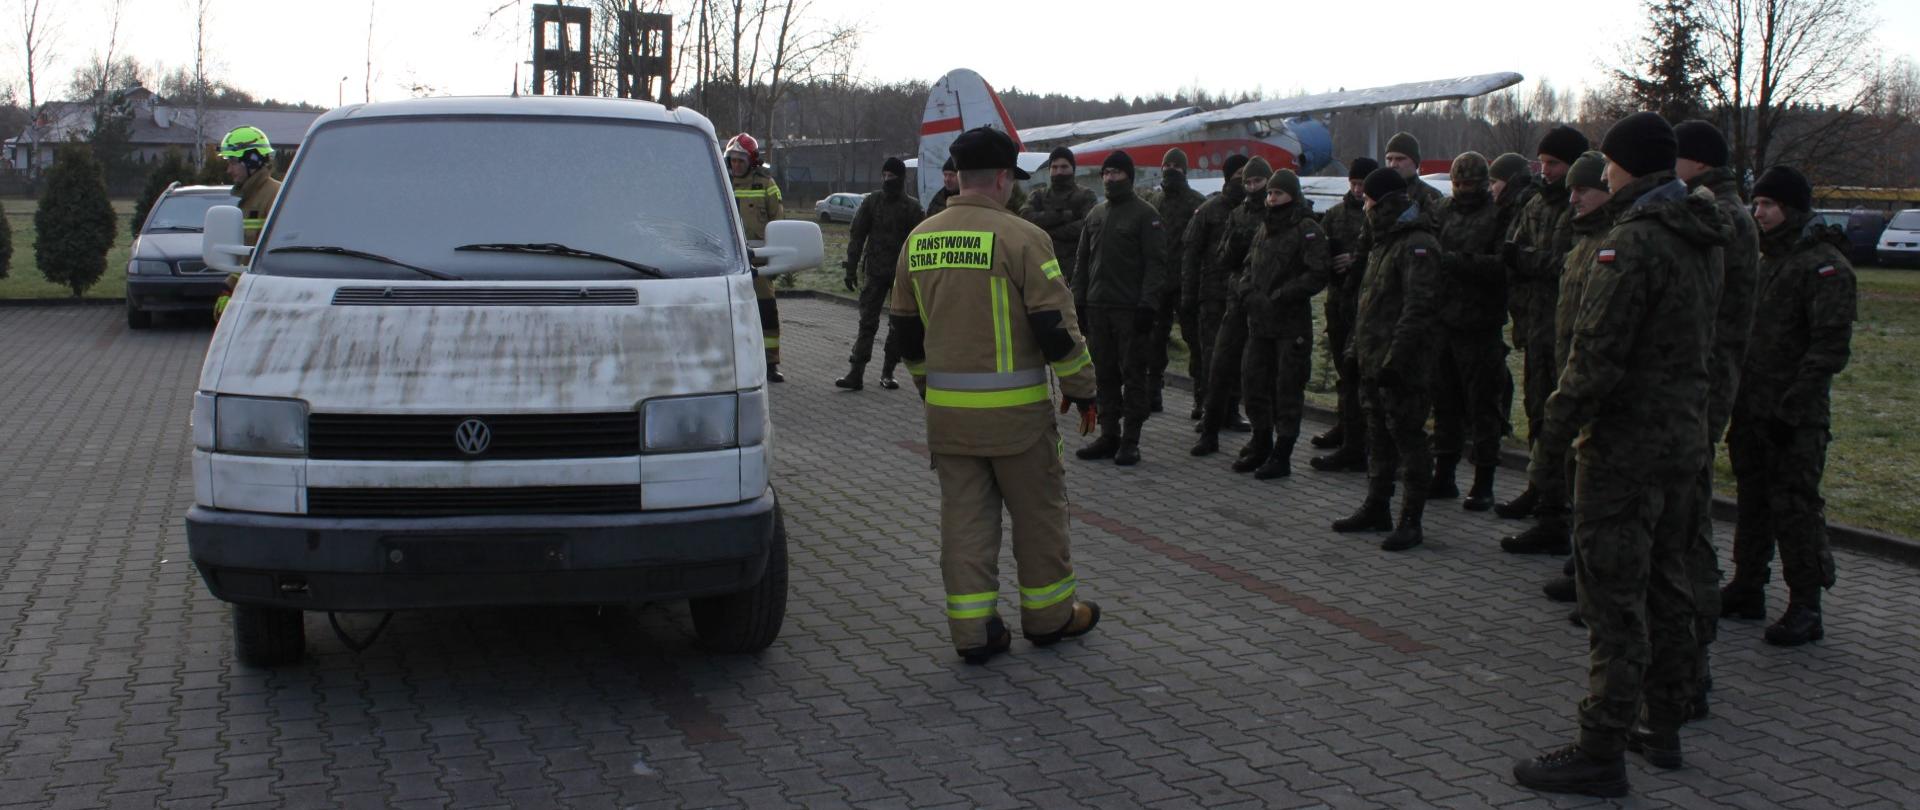 strażak PSP stojący tyłem przy samochodzie, obok grupa żołnierzy WOT